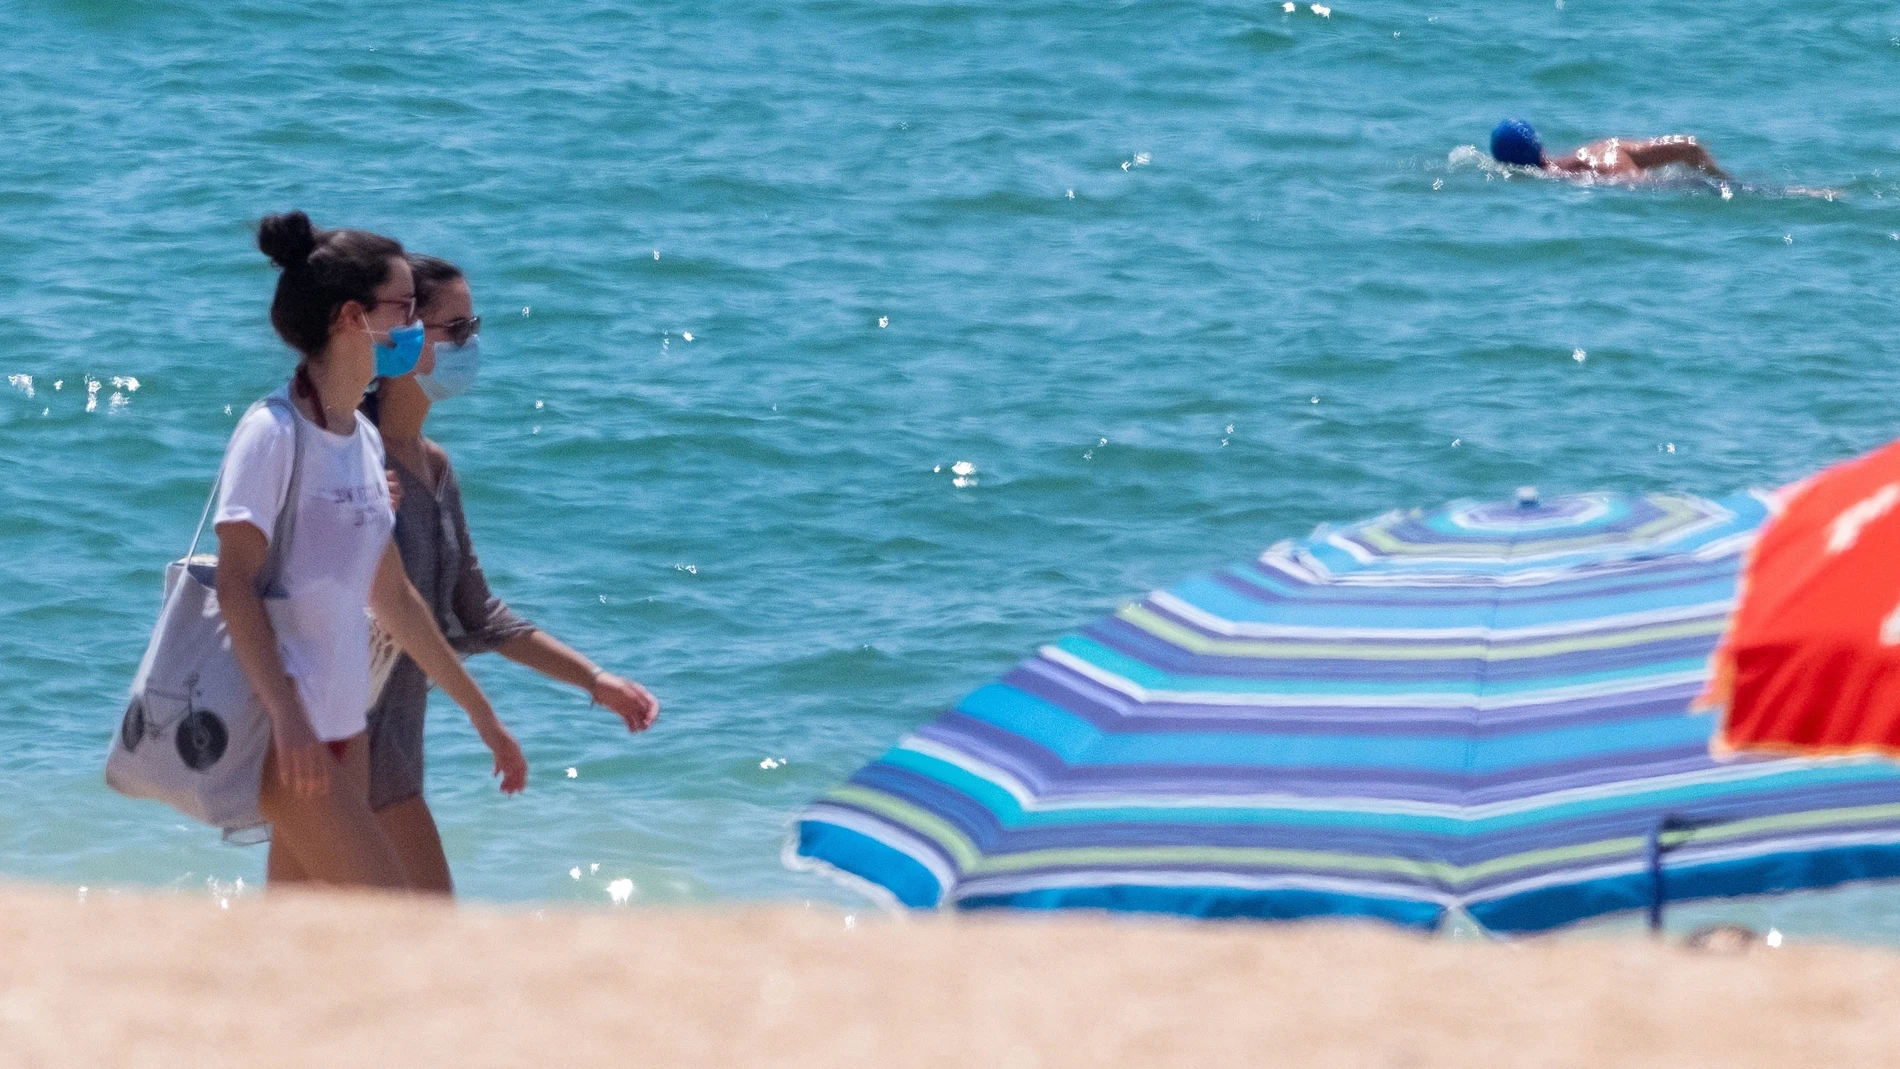 Mascarillas obligatorias en las playas de Andalucía desde hoy